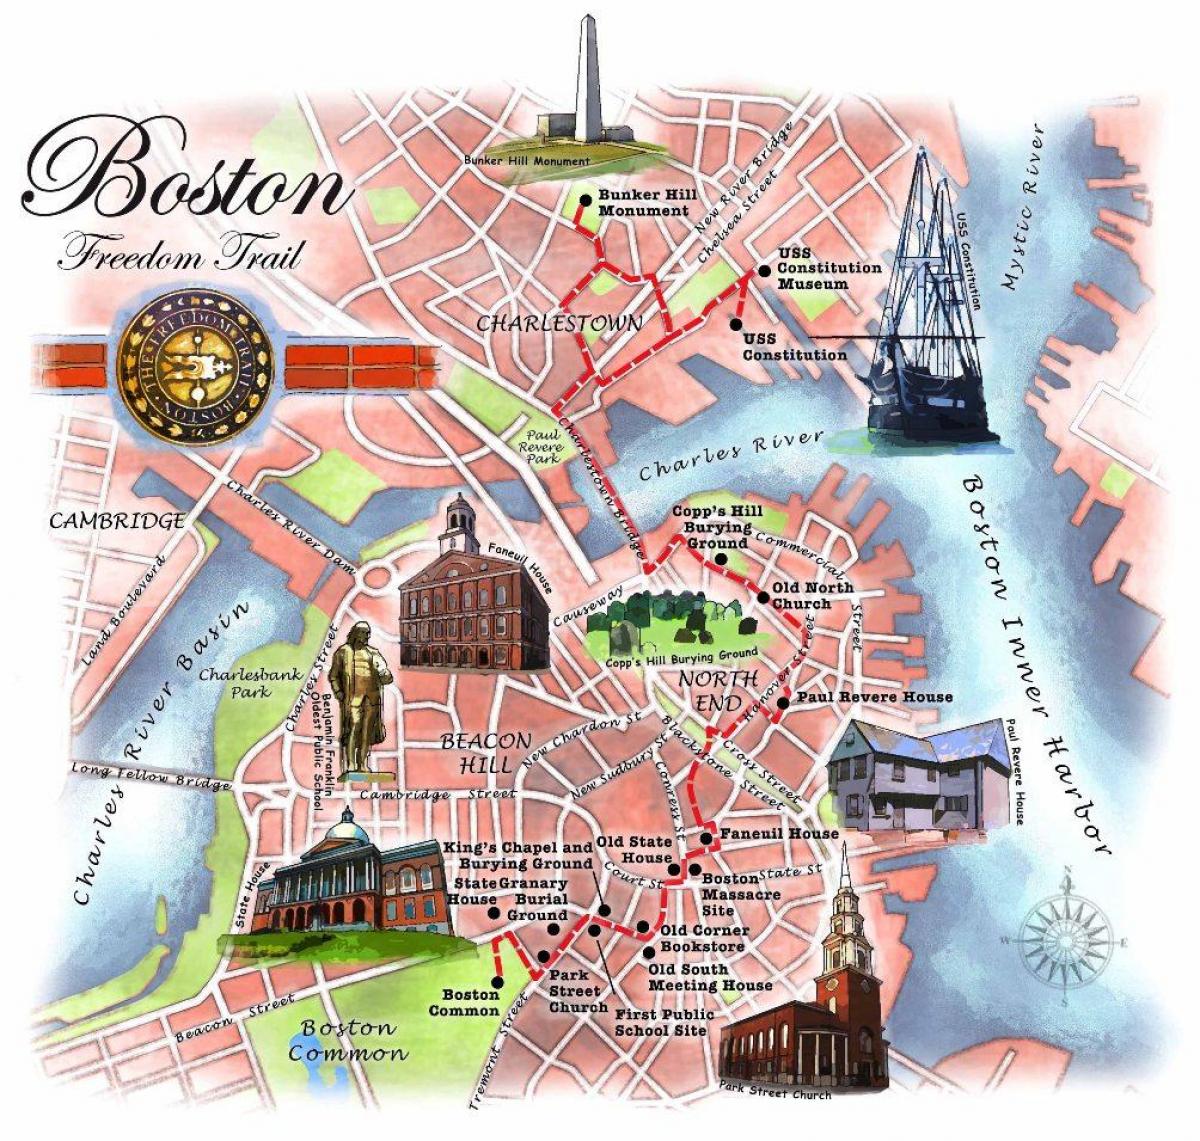 ફ્રીડમ ટ્રેઇલ નકશો બોસ્ટન